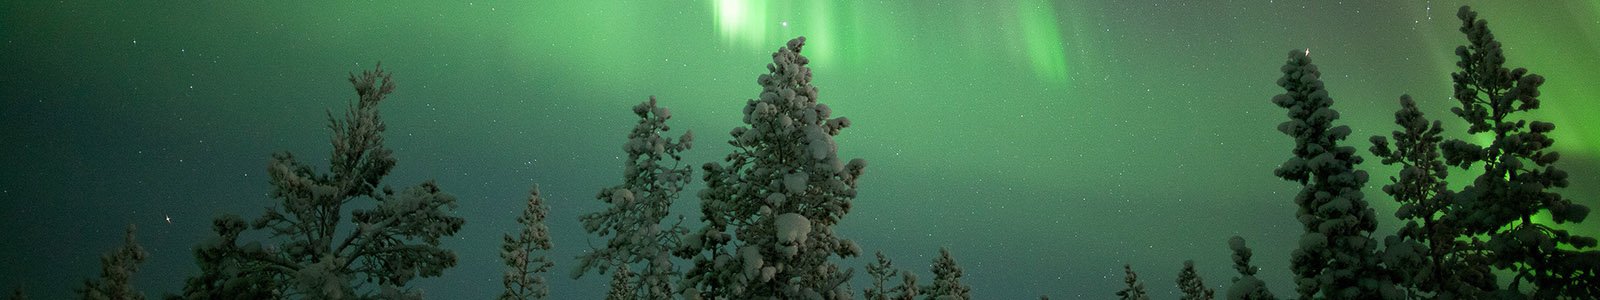 Ga op reis naar Lapland in winter 2022/2023